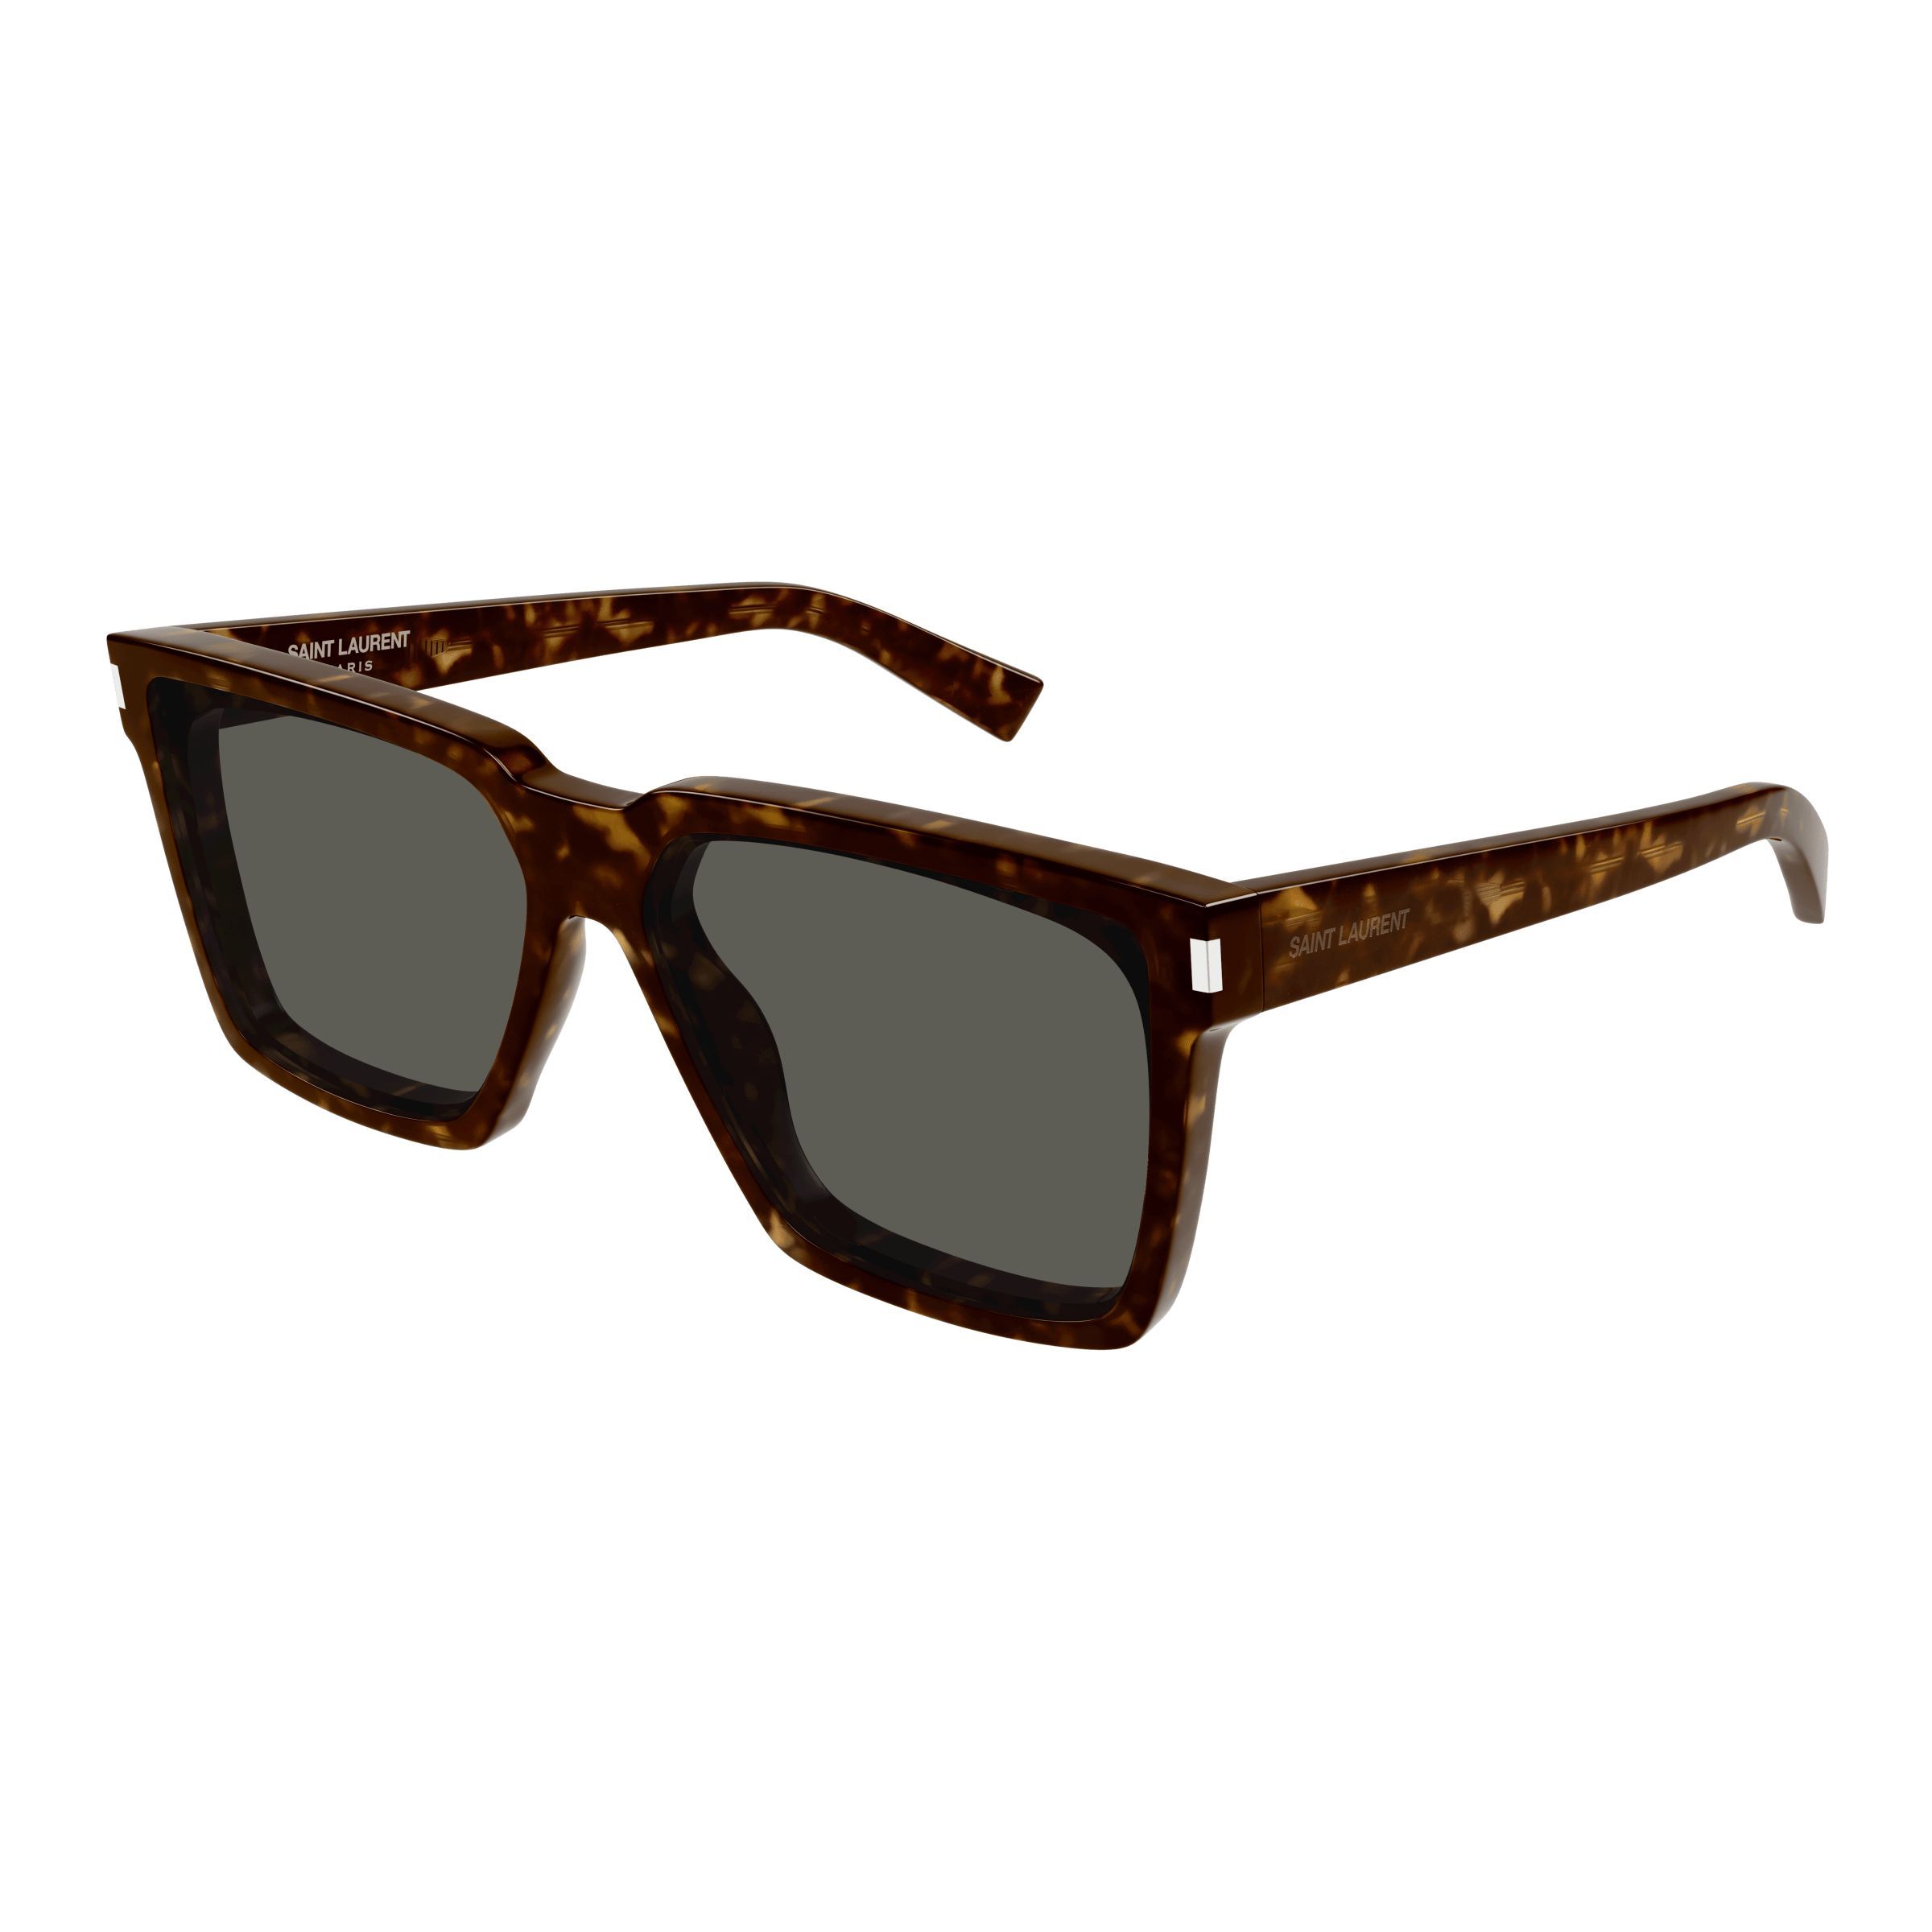 SL 610 Square Sunglasses  001 - size 59